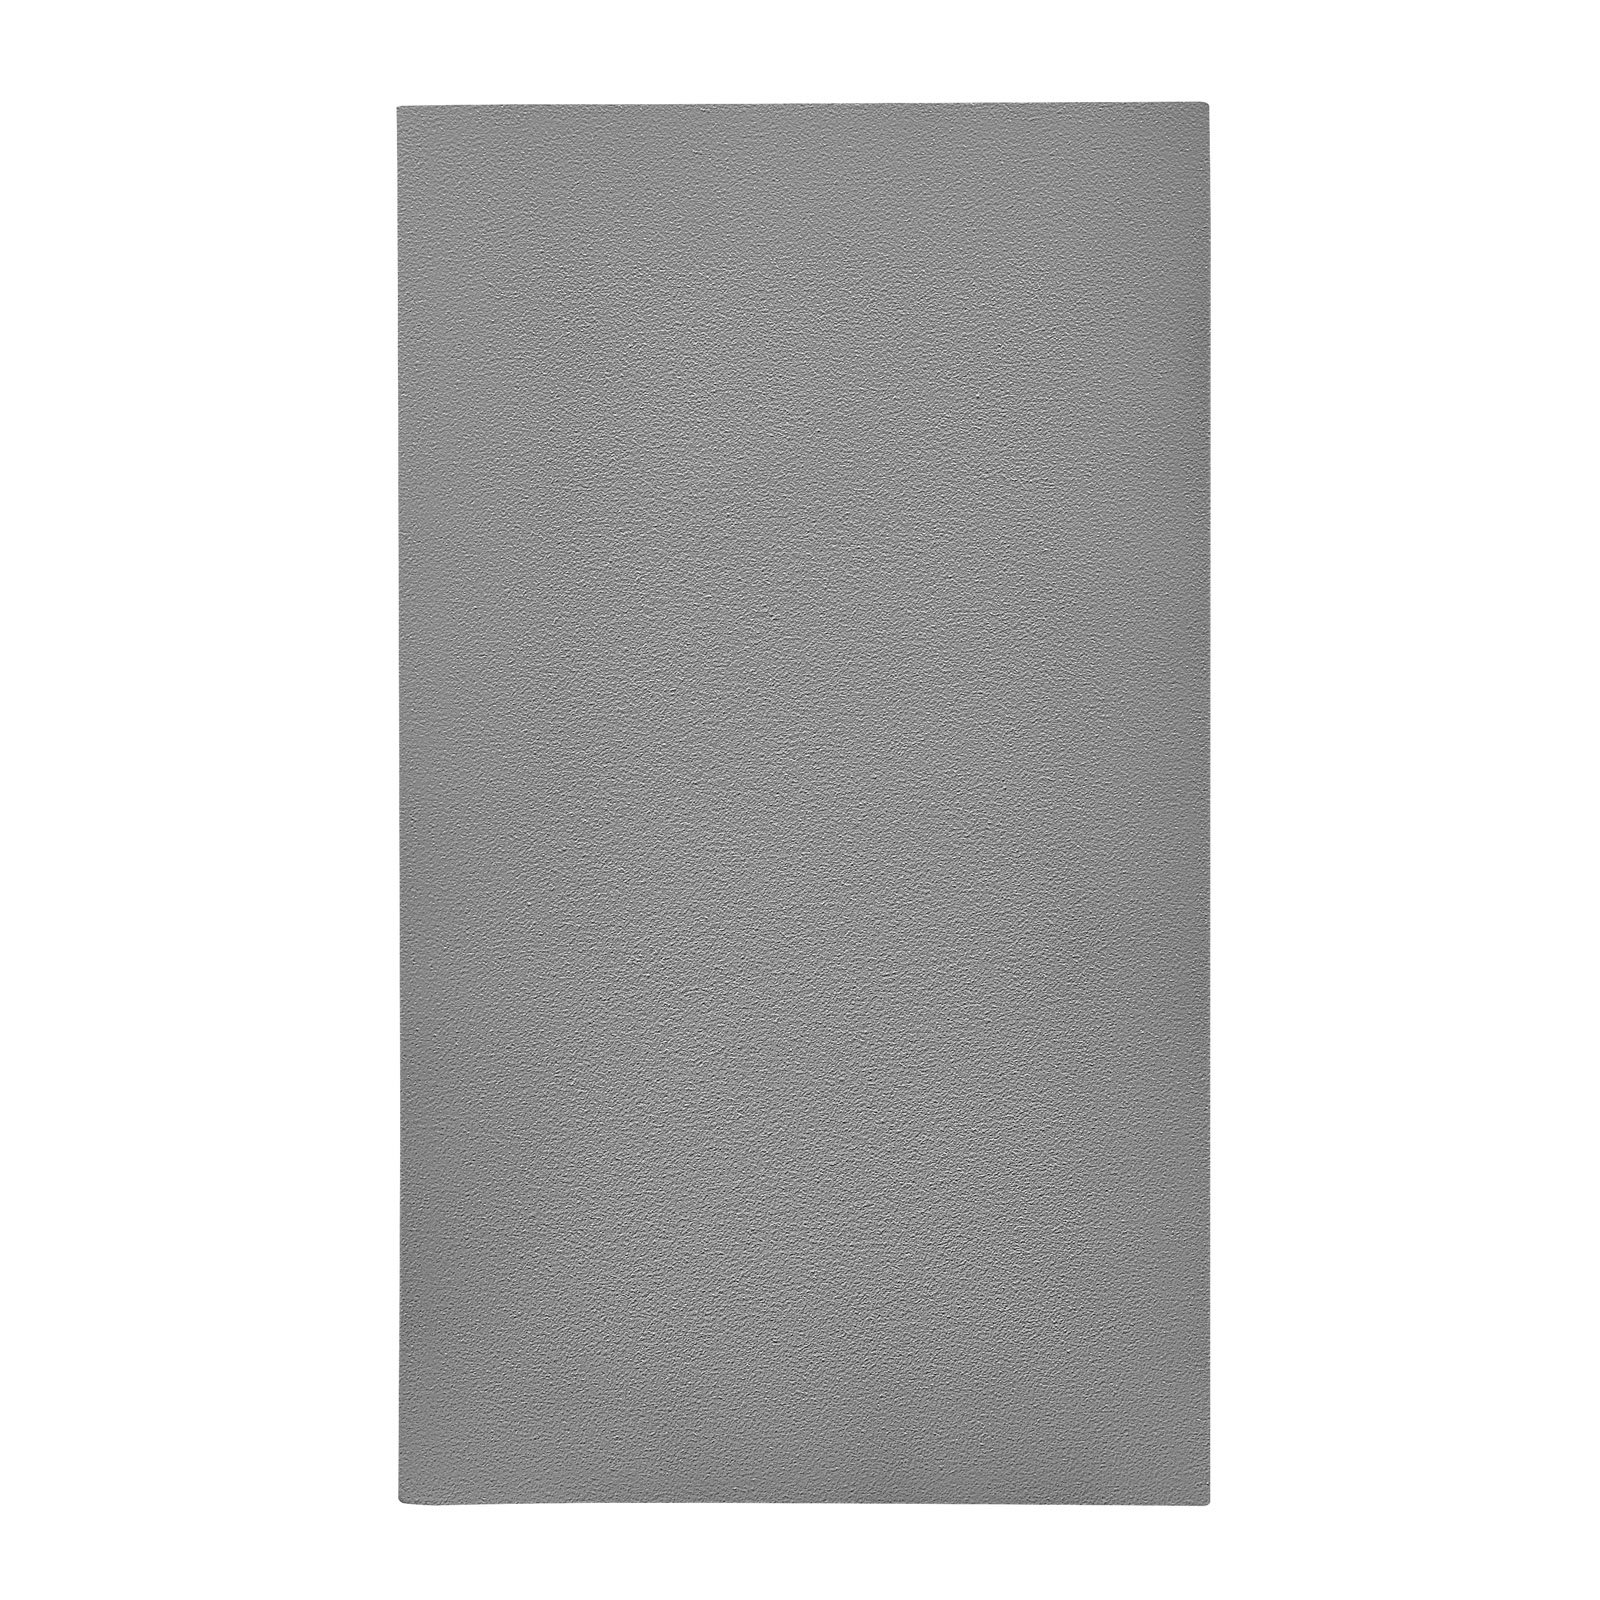 Venkovní světlo Canto Maxi Kubi 2, 17 cm, šedá